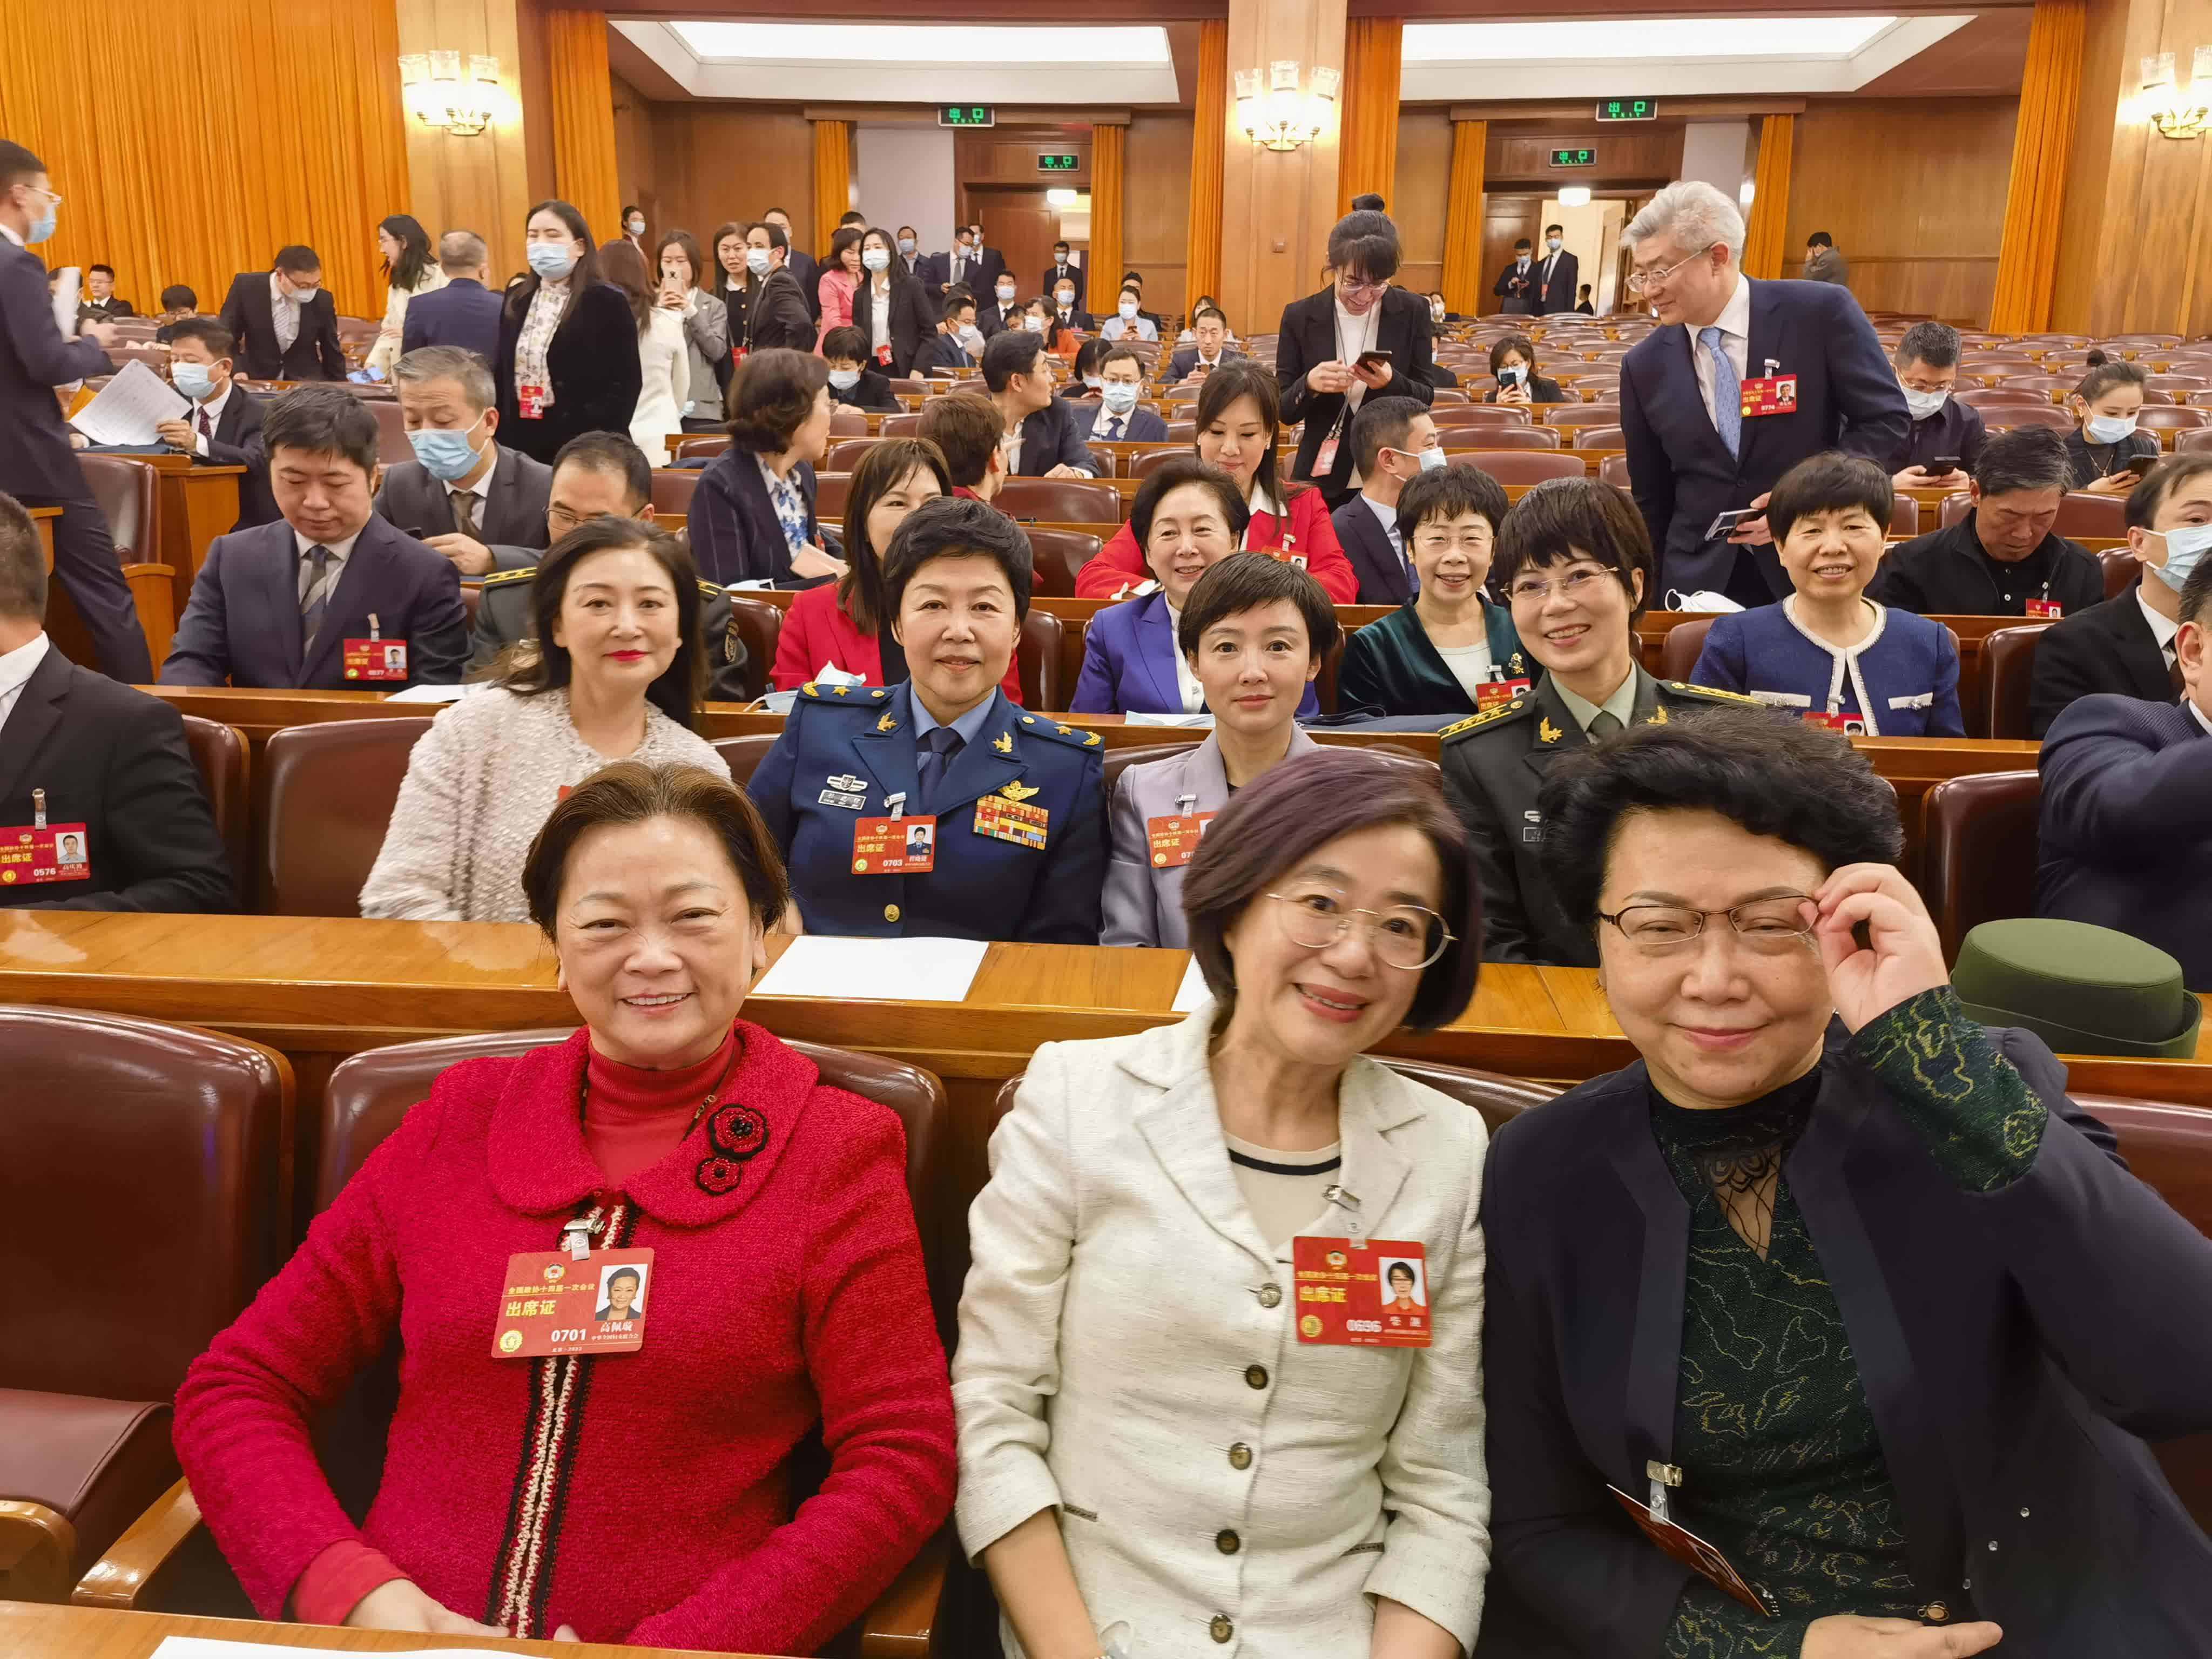 全國各地人大代表和政協委員相聚北京，今日（7日）港區女委員們在北京人民大會堂前合影。在「三八」國際勞動婦女節即將來臨之際，祝全國各族各界女性朋友節日快樂。圖為高珮璇委員（左）與全國政協婦女界委員在北京人民大會堂會場。